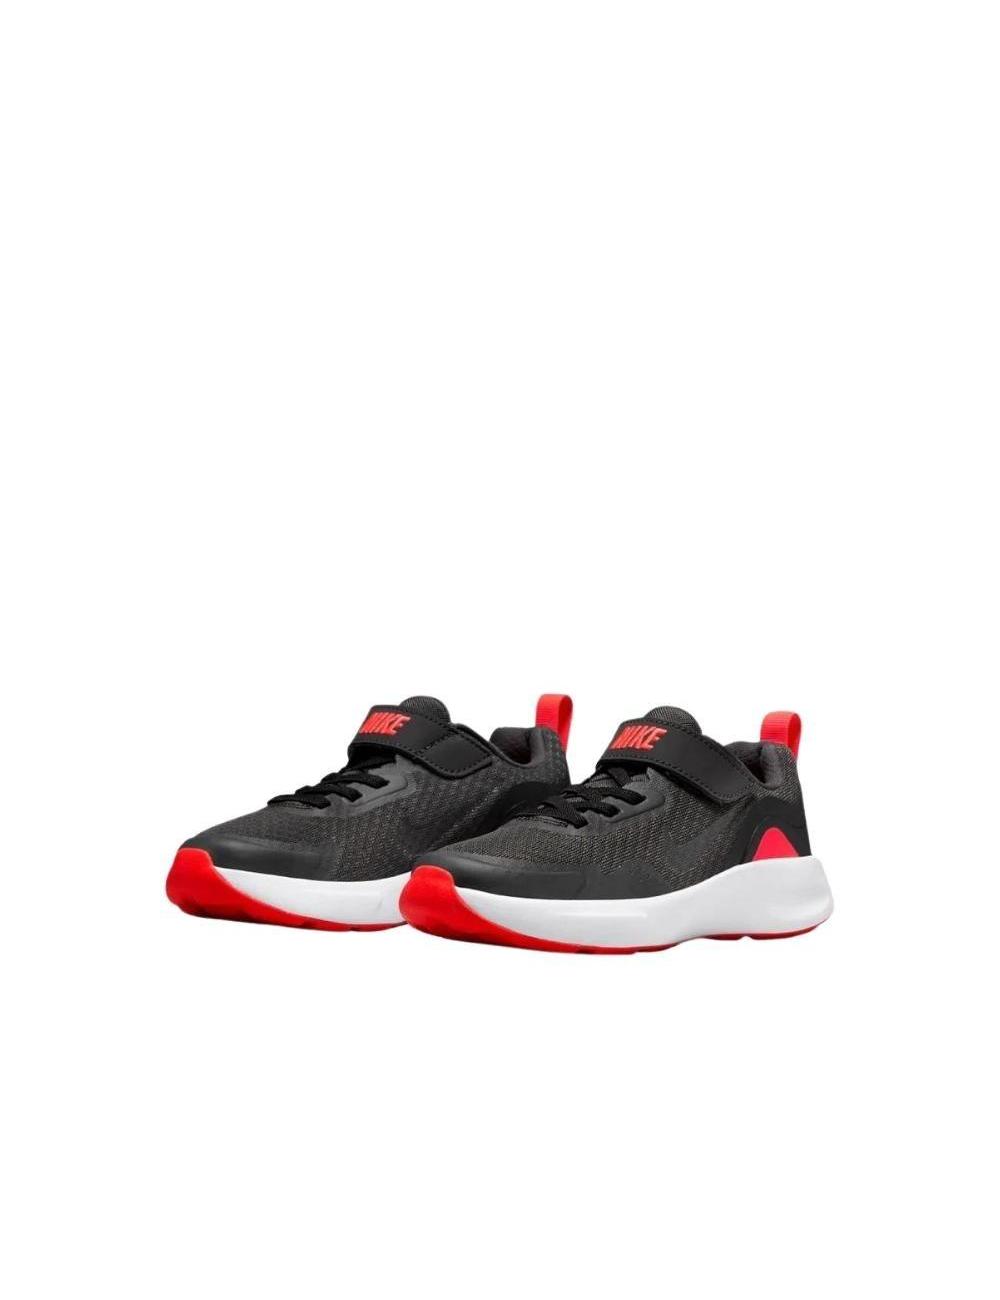 Nike WearAllDay Little Kids' Shoe SP22 GRIS-NEGRO-ROJO